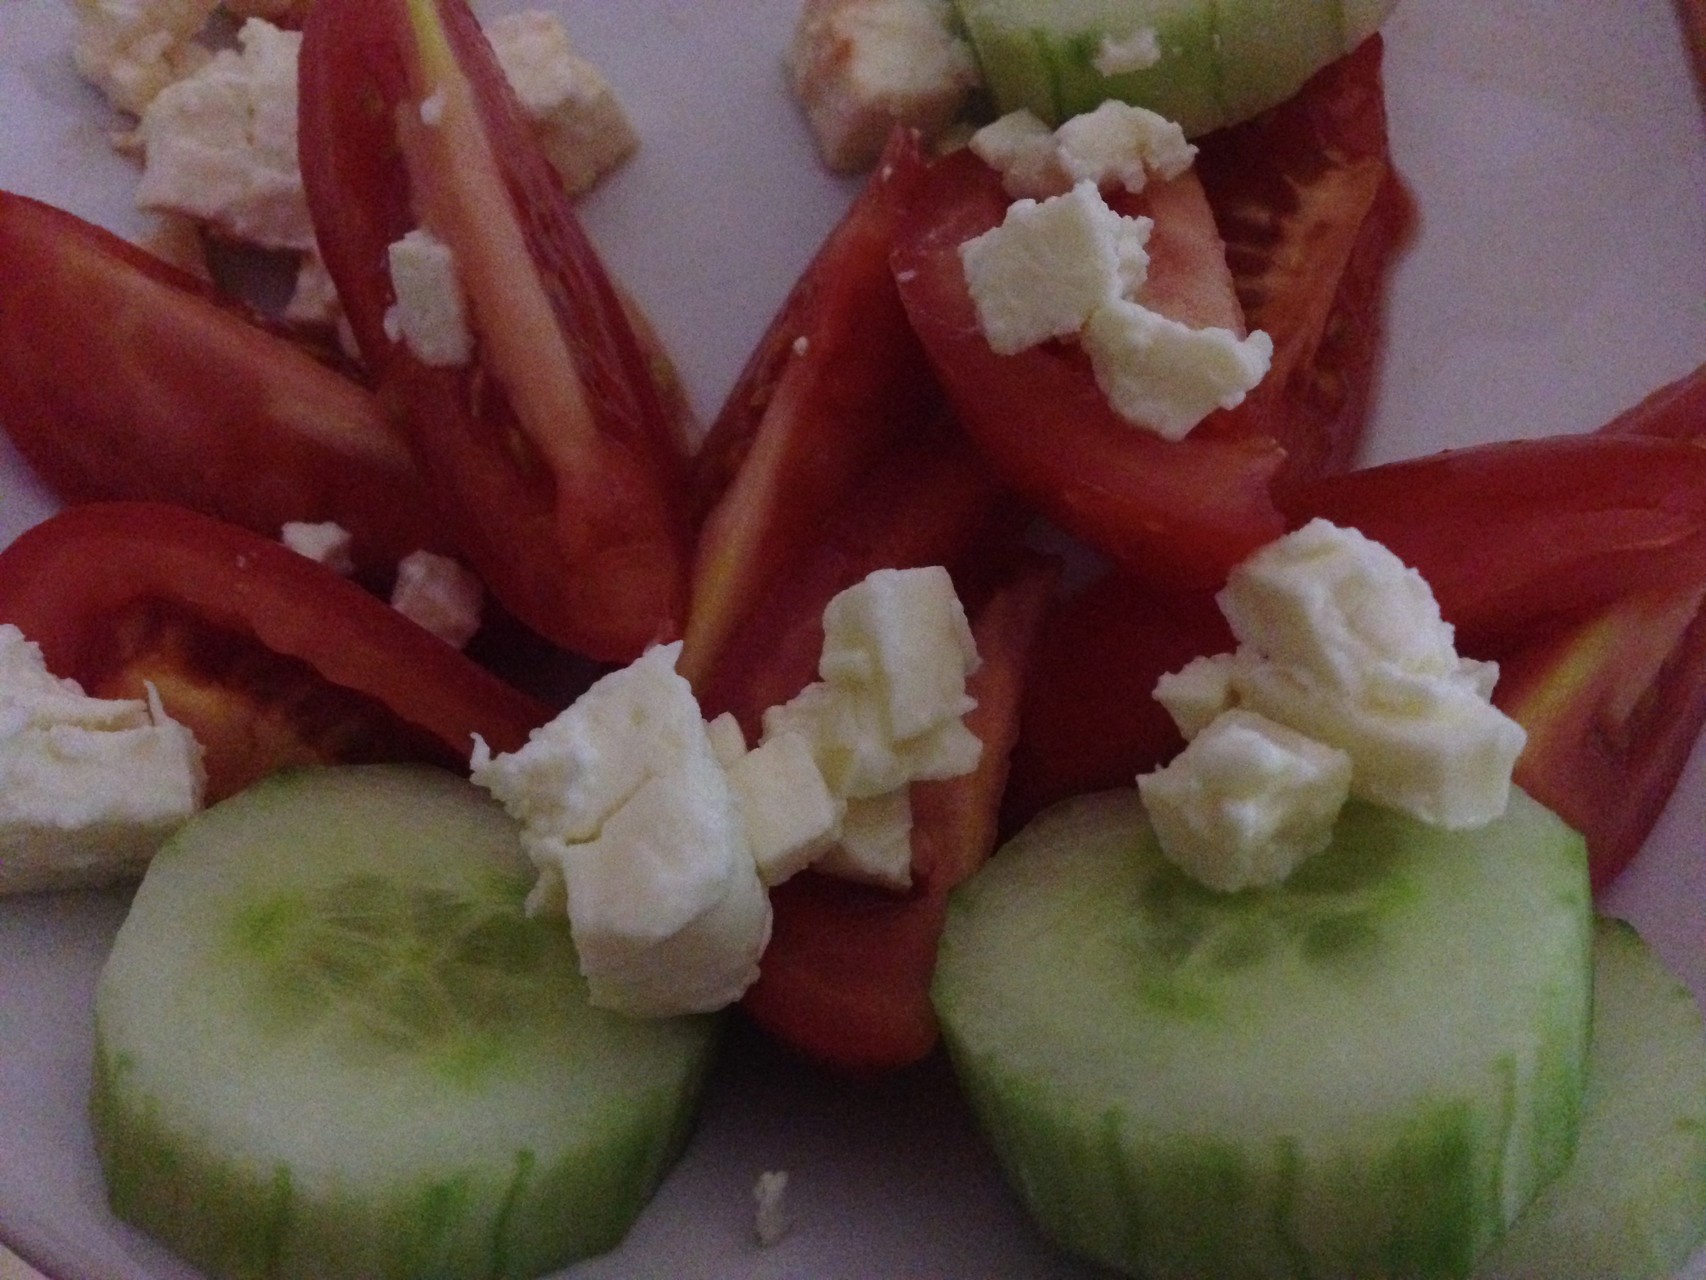 Abendessen: 6 kleinere Tomaten, 1 Salatgurke, 1/2 Packung Patros Light